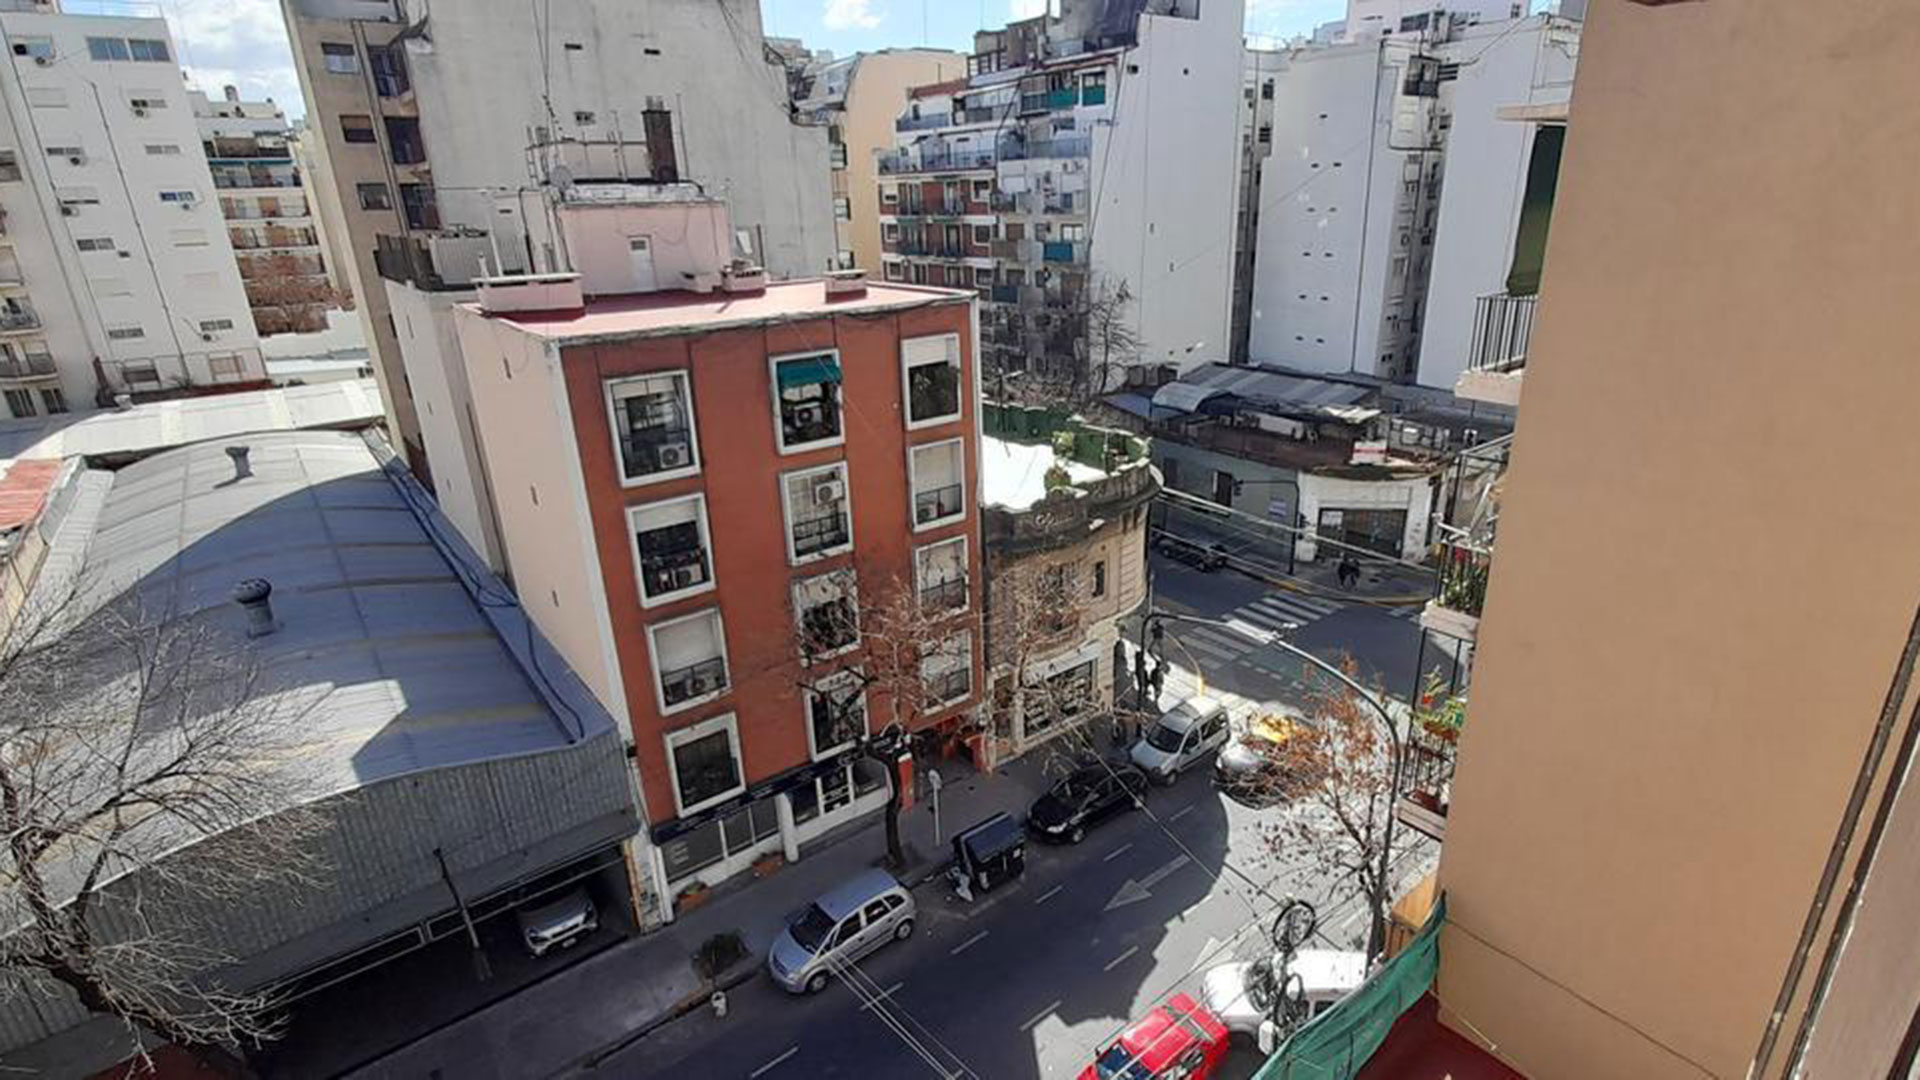 Vista desde un departamento ubicado sobre la Avenida Monroe al 2600 que se vende por USD 85.000 y está en una zona dinámica de Belgrano